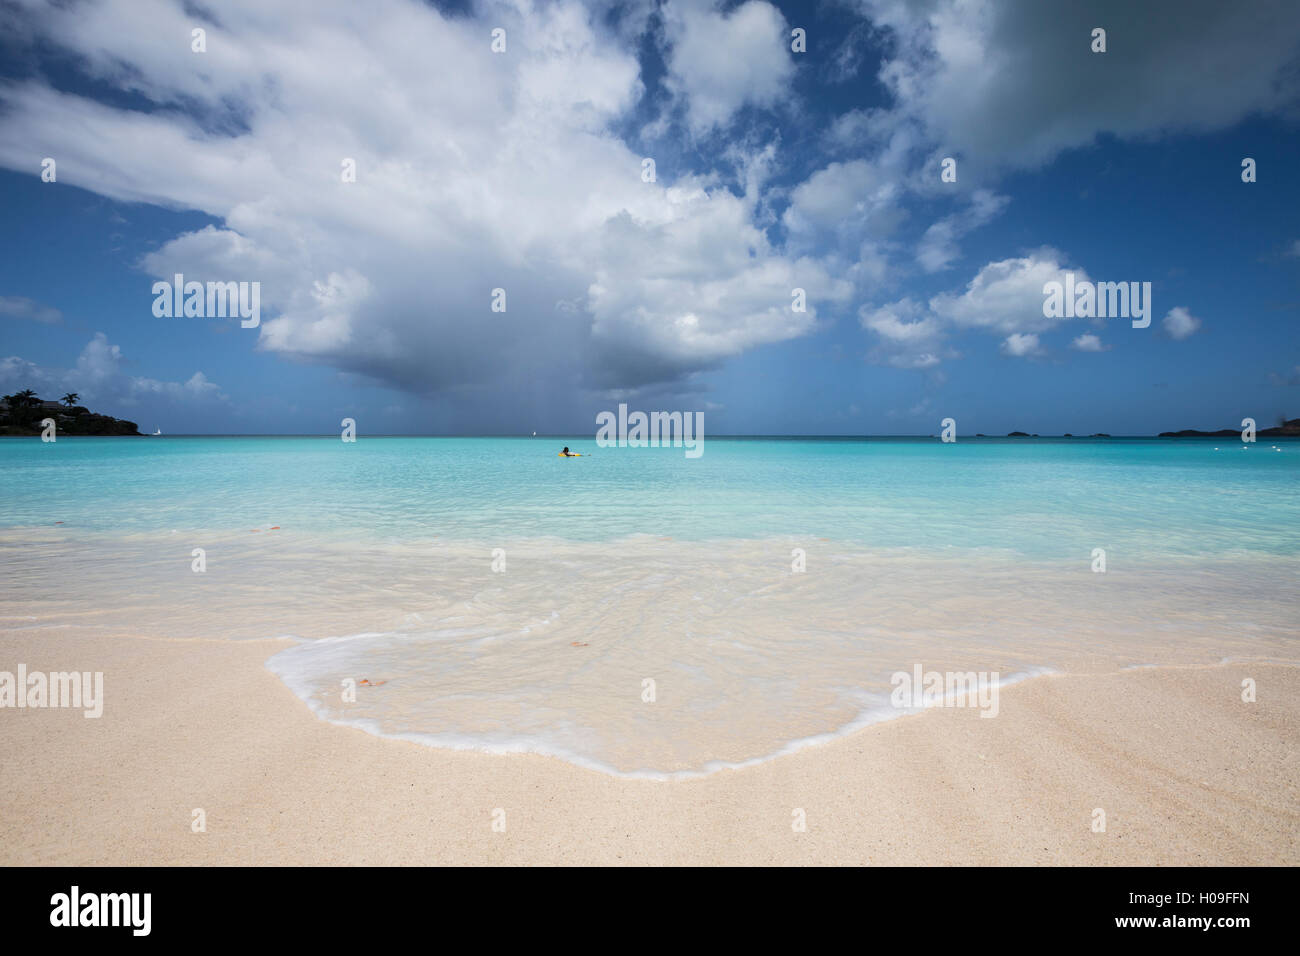 De fina arena blanca y rodeada por las aguas turquesa del mar Caribe, el nido, Antigua, Antigua y Barbuda, Islas de Sotavento Foto de stock